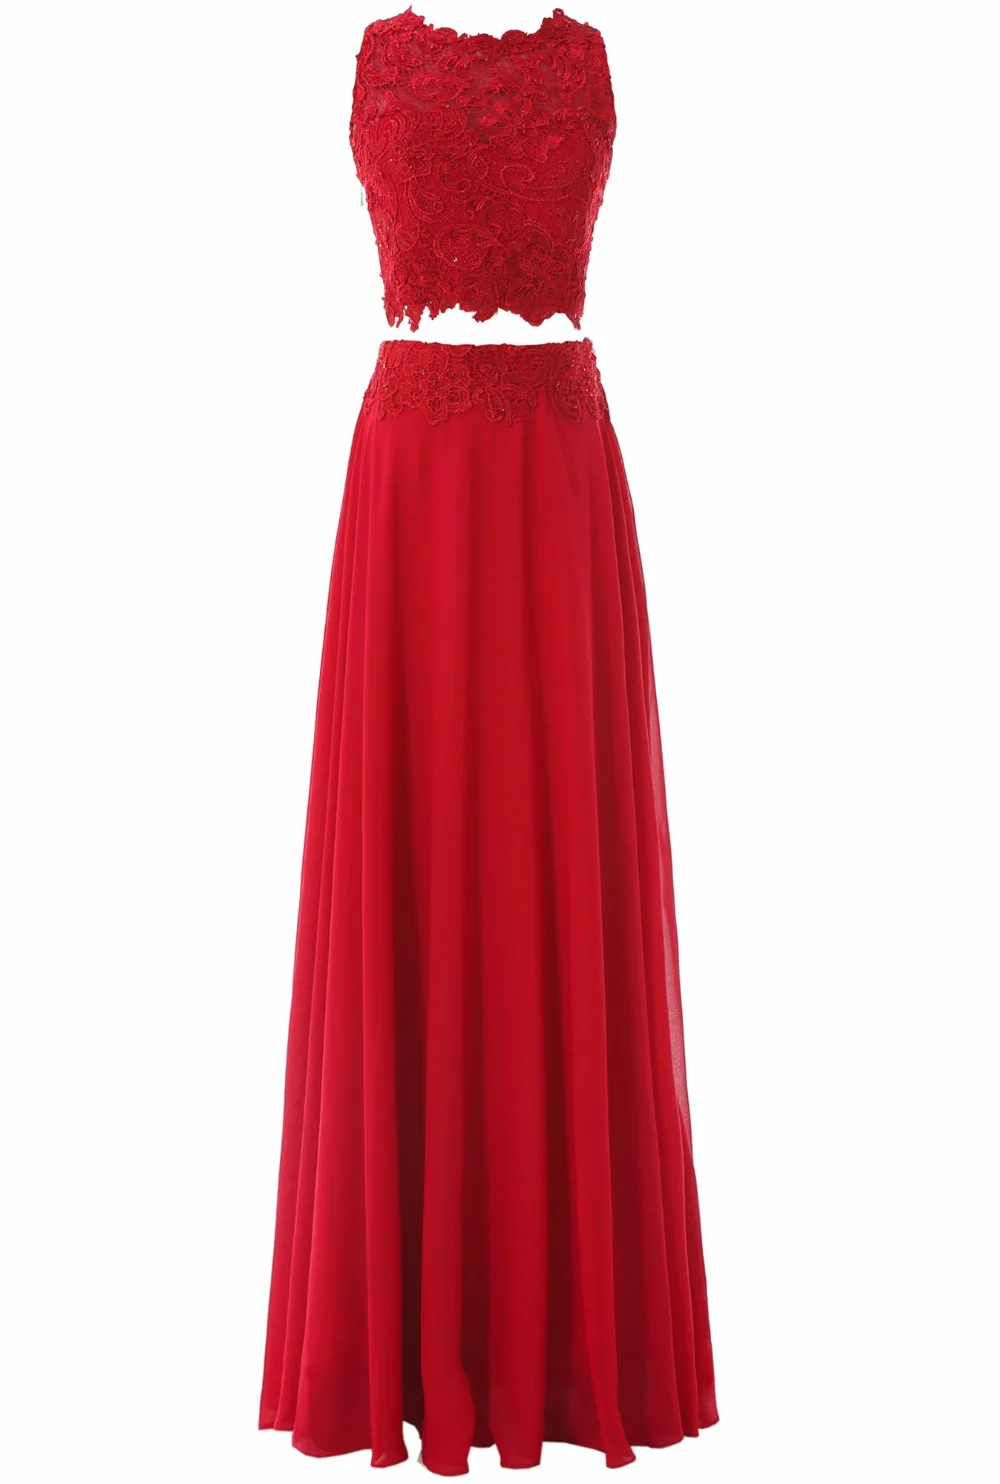 Линия шифон с круглым вырезом Chifon длинный Двойка платье для выпускного вечера 2017 красное кружевное вечернее платье Аппликации vestido de fiesta